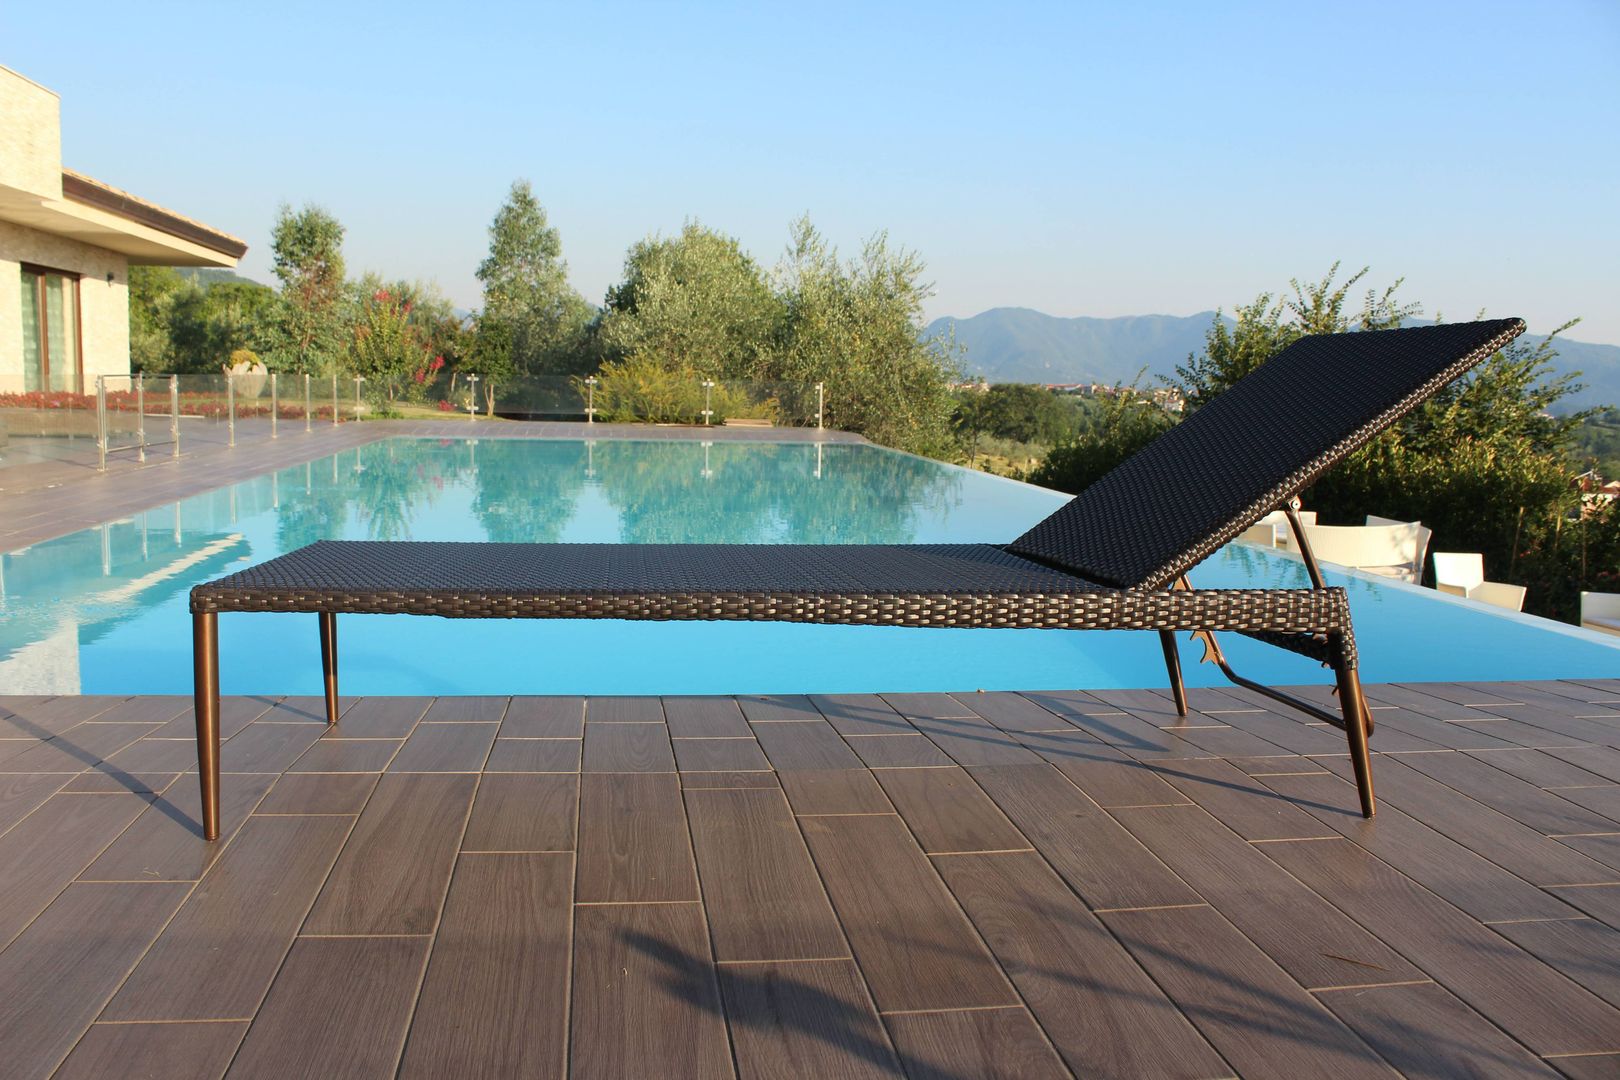 Stile a bordo piscina, Uniko Uniko Mediterranean style pool Pool